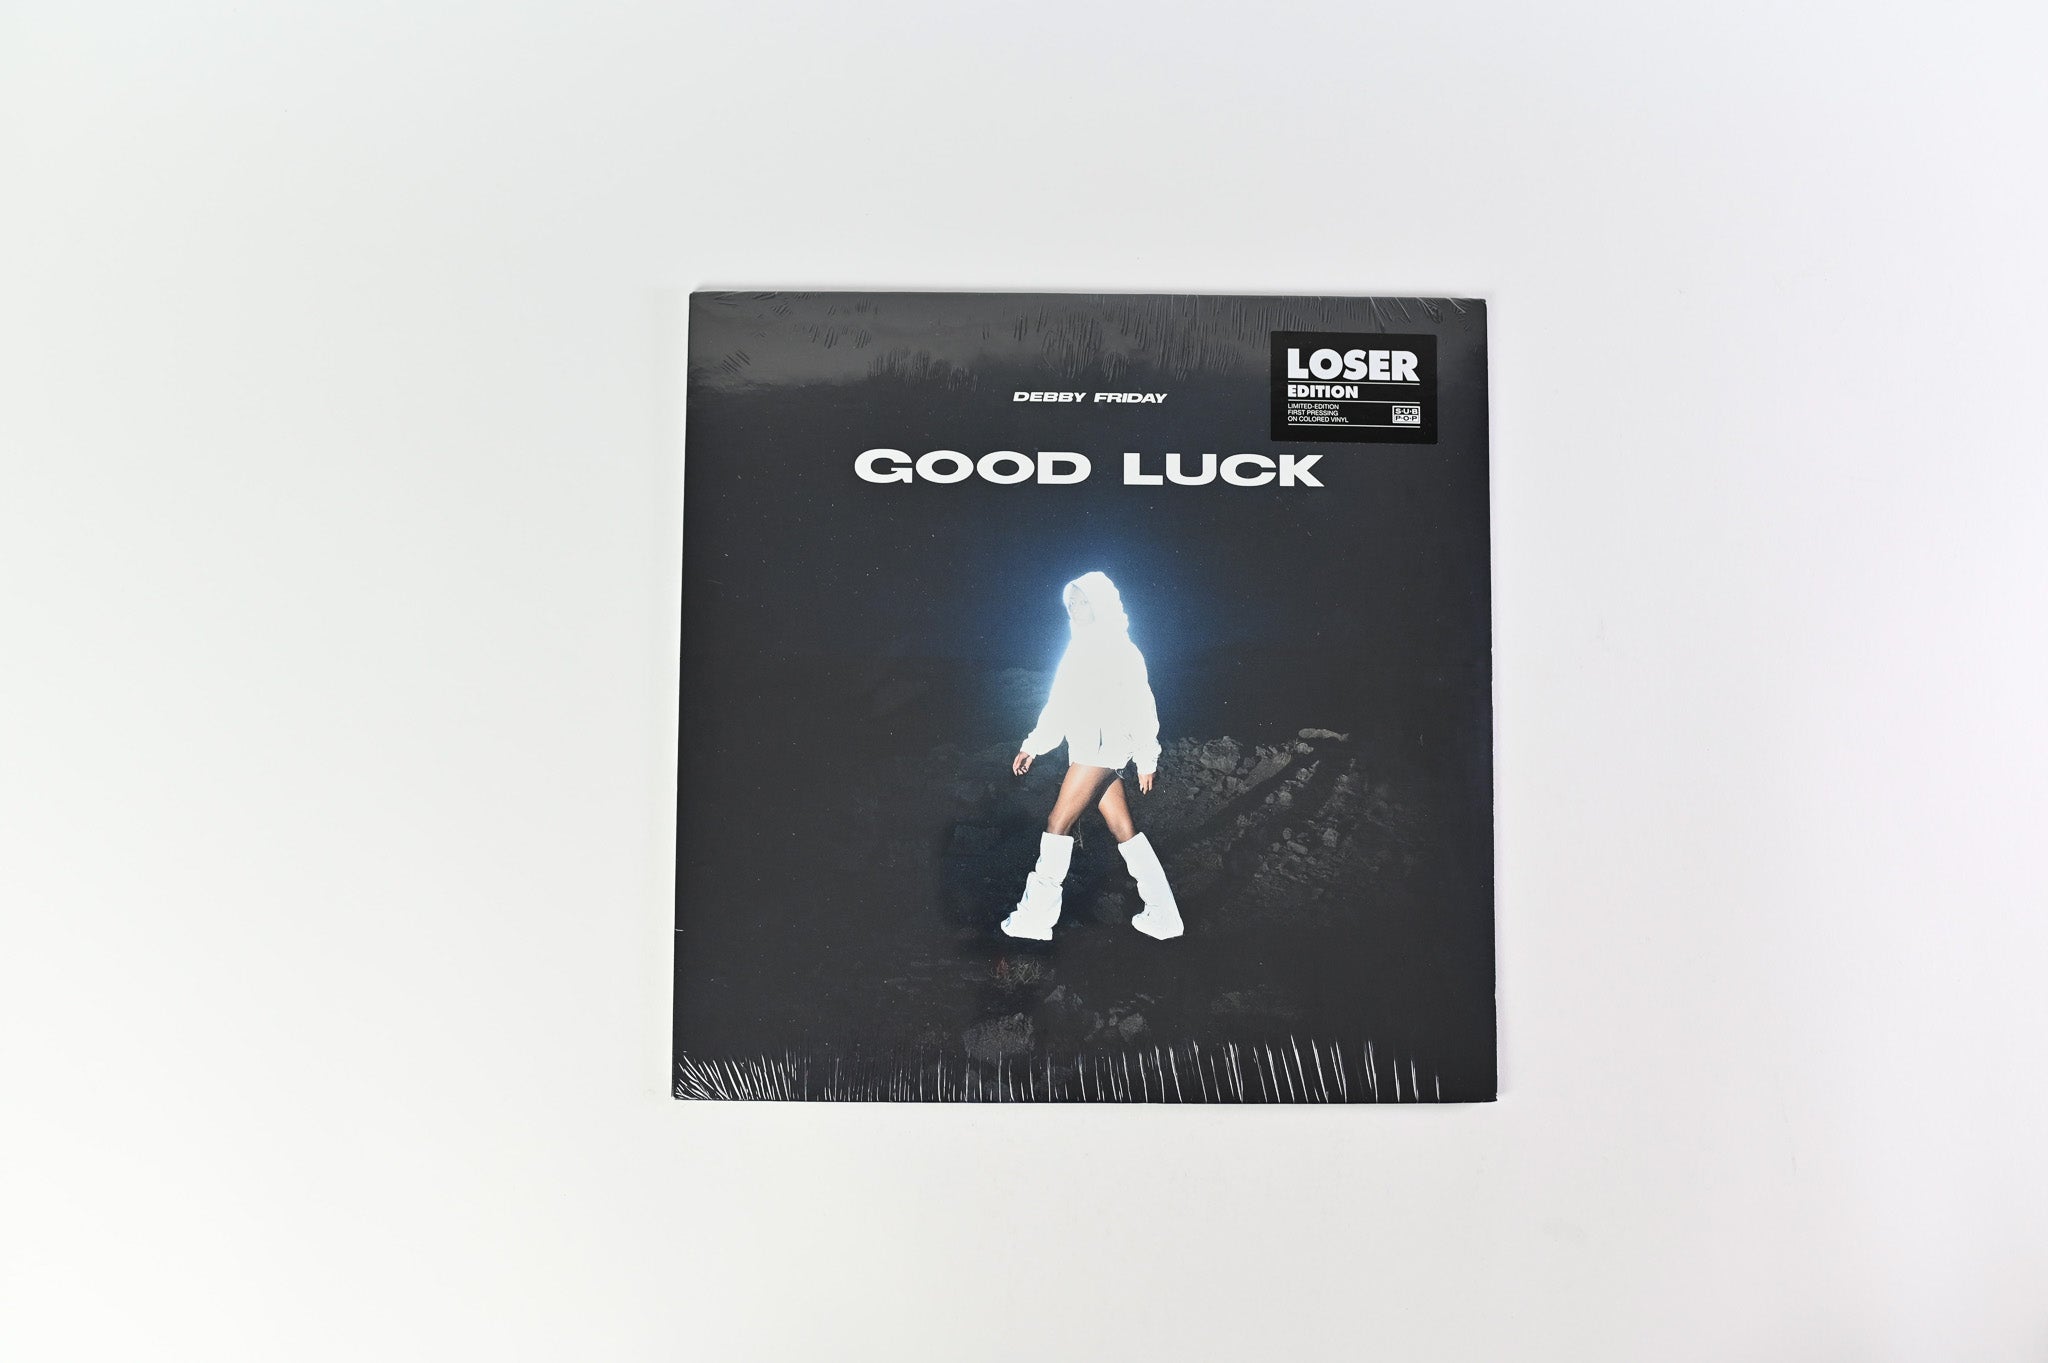 Debby Friday - Good Luck on Sub Pop - Clear Vinyl